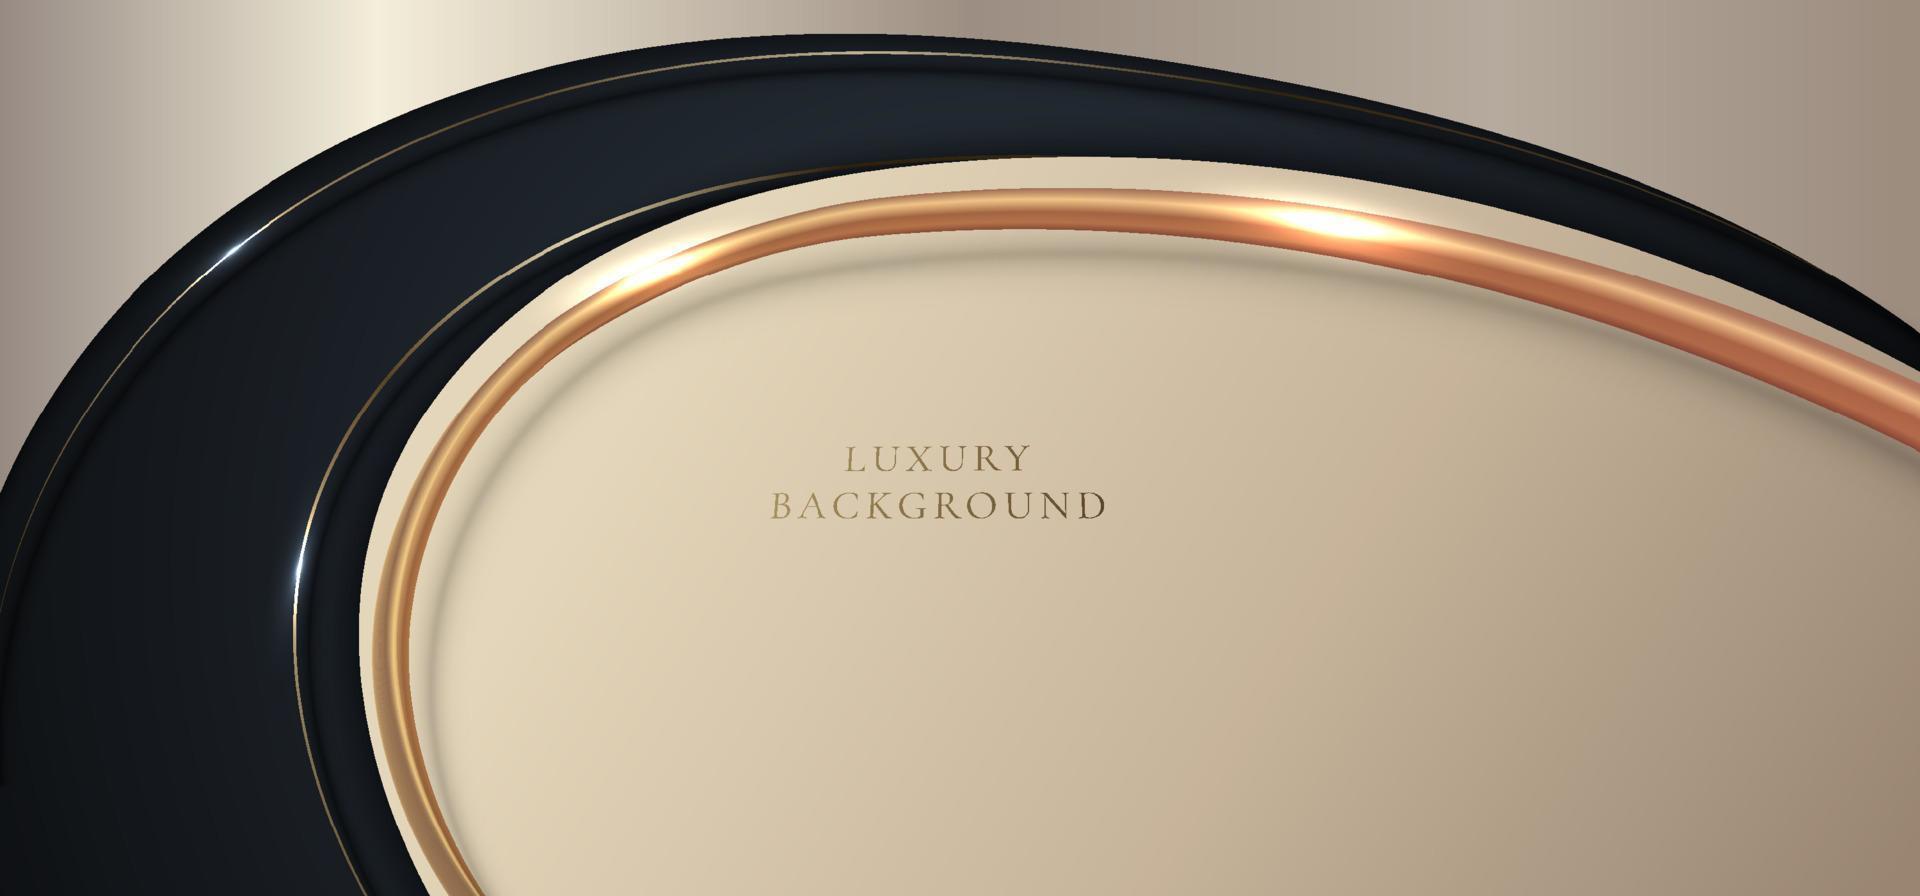 modelo de banner abstrato forma de curva dourada elegante 3d com linha curva de ouro brilhante e iluminação cintilante no estilo de luxo de fundo azul escuro vetor